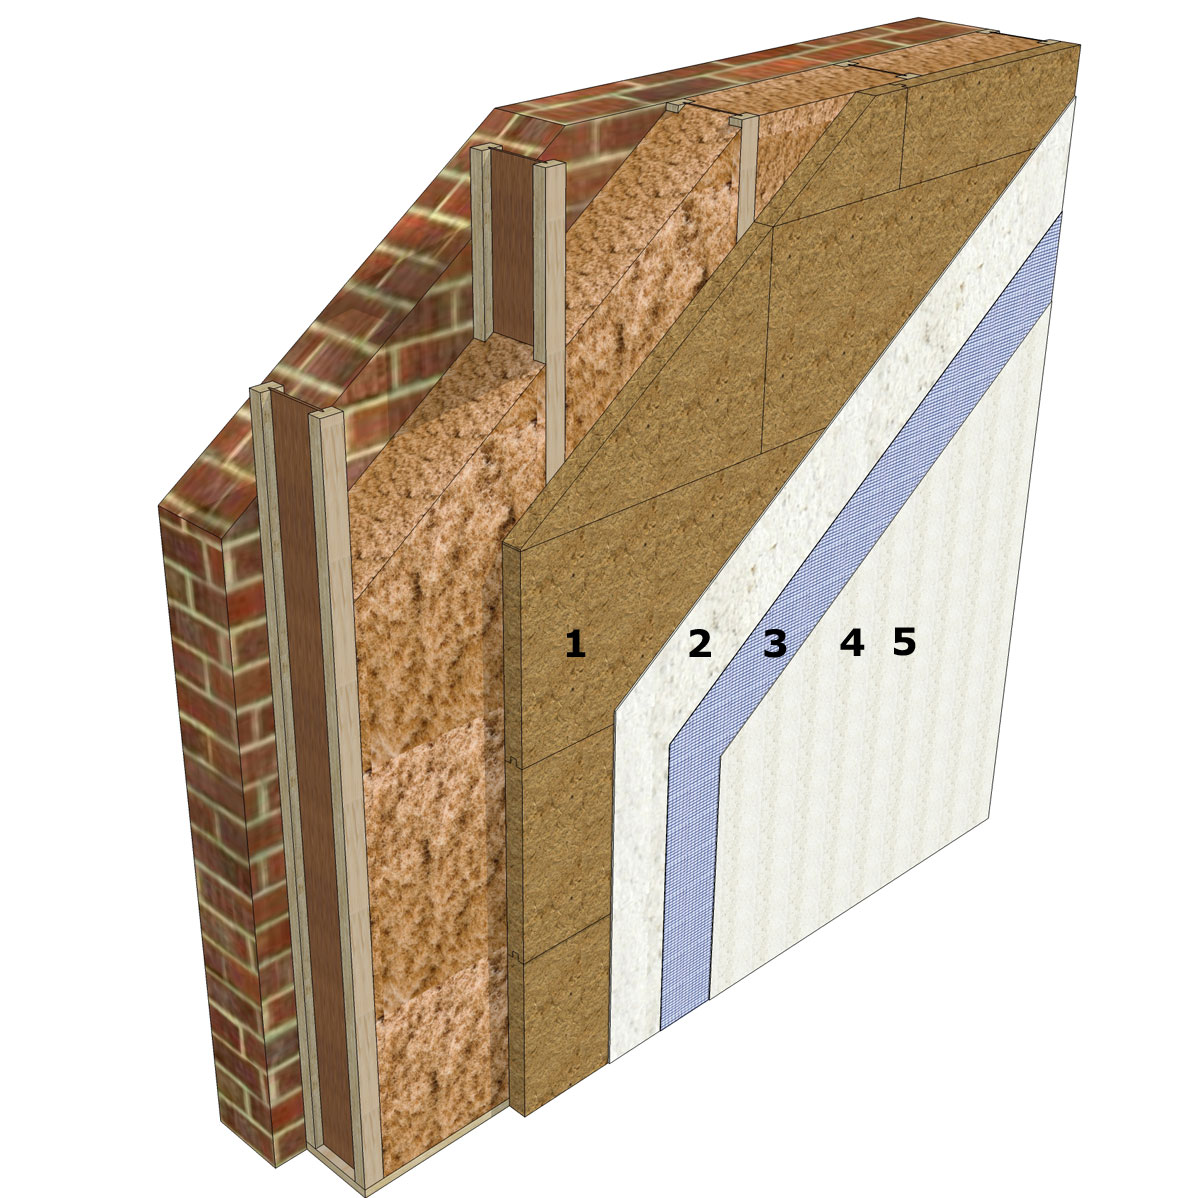 Štruktúra vrstiev na vonkajších stenách z minerálnych materiálov s dodatočnou drevenou rámovou konštrukciou.v